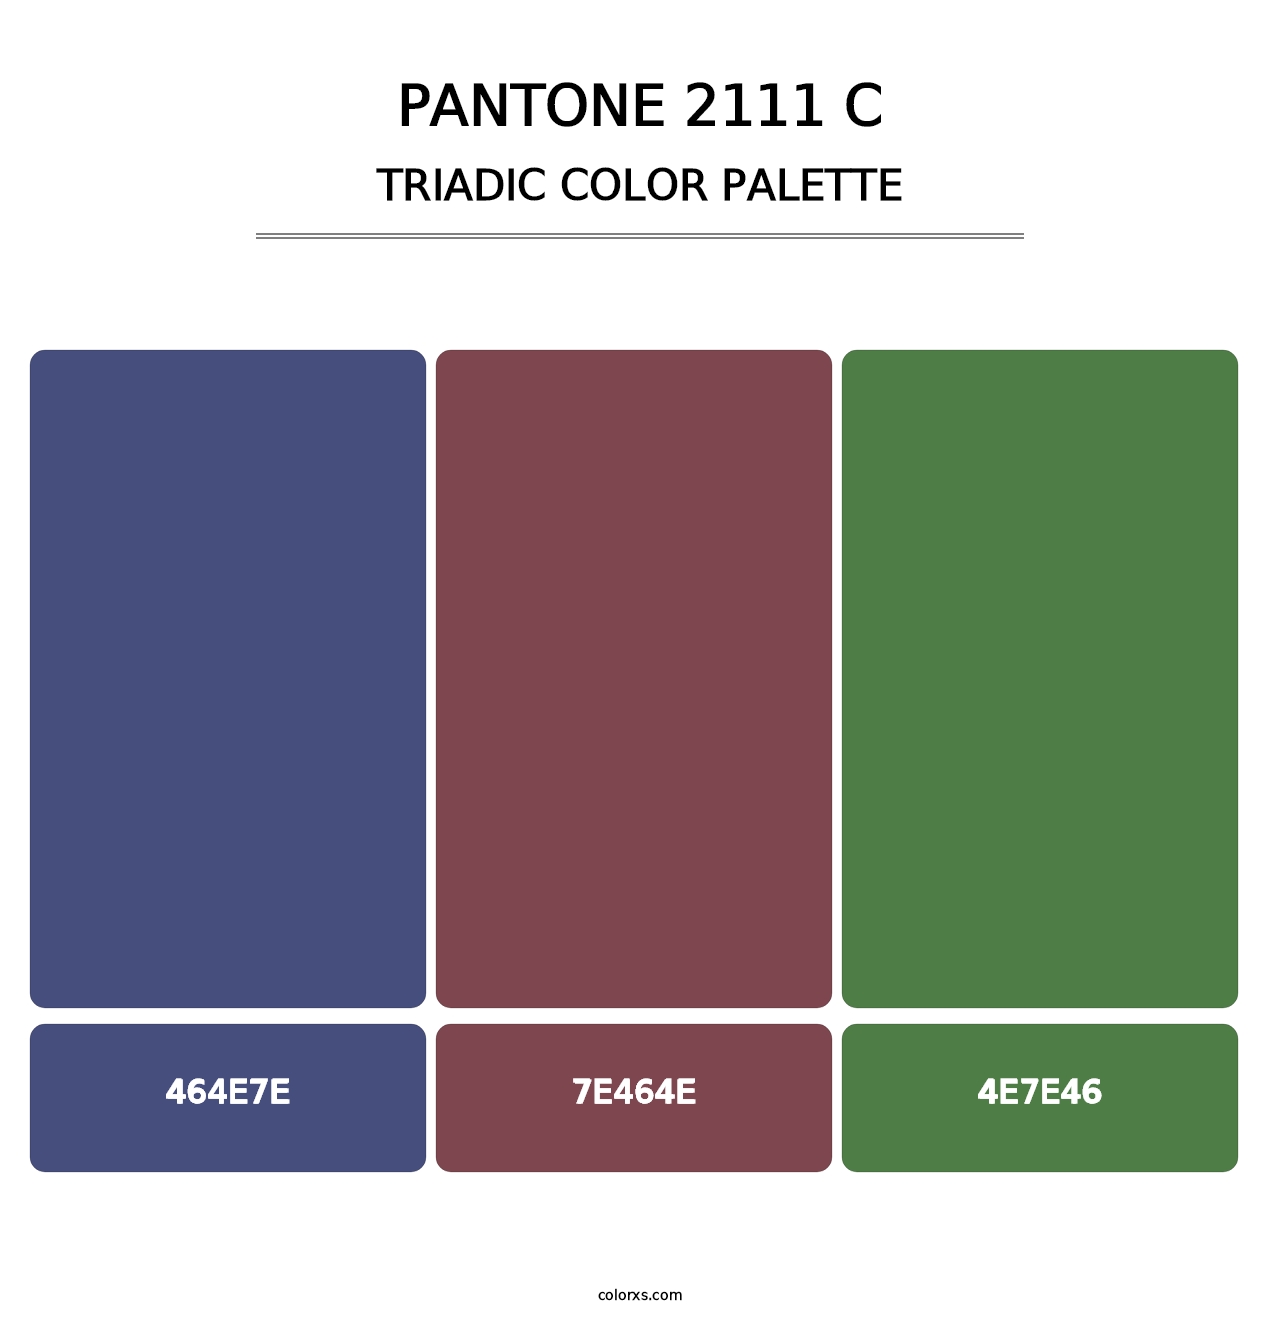 PANTONE 2111 C - Triadic Color Palette